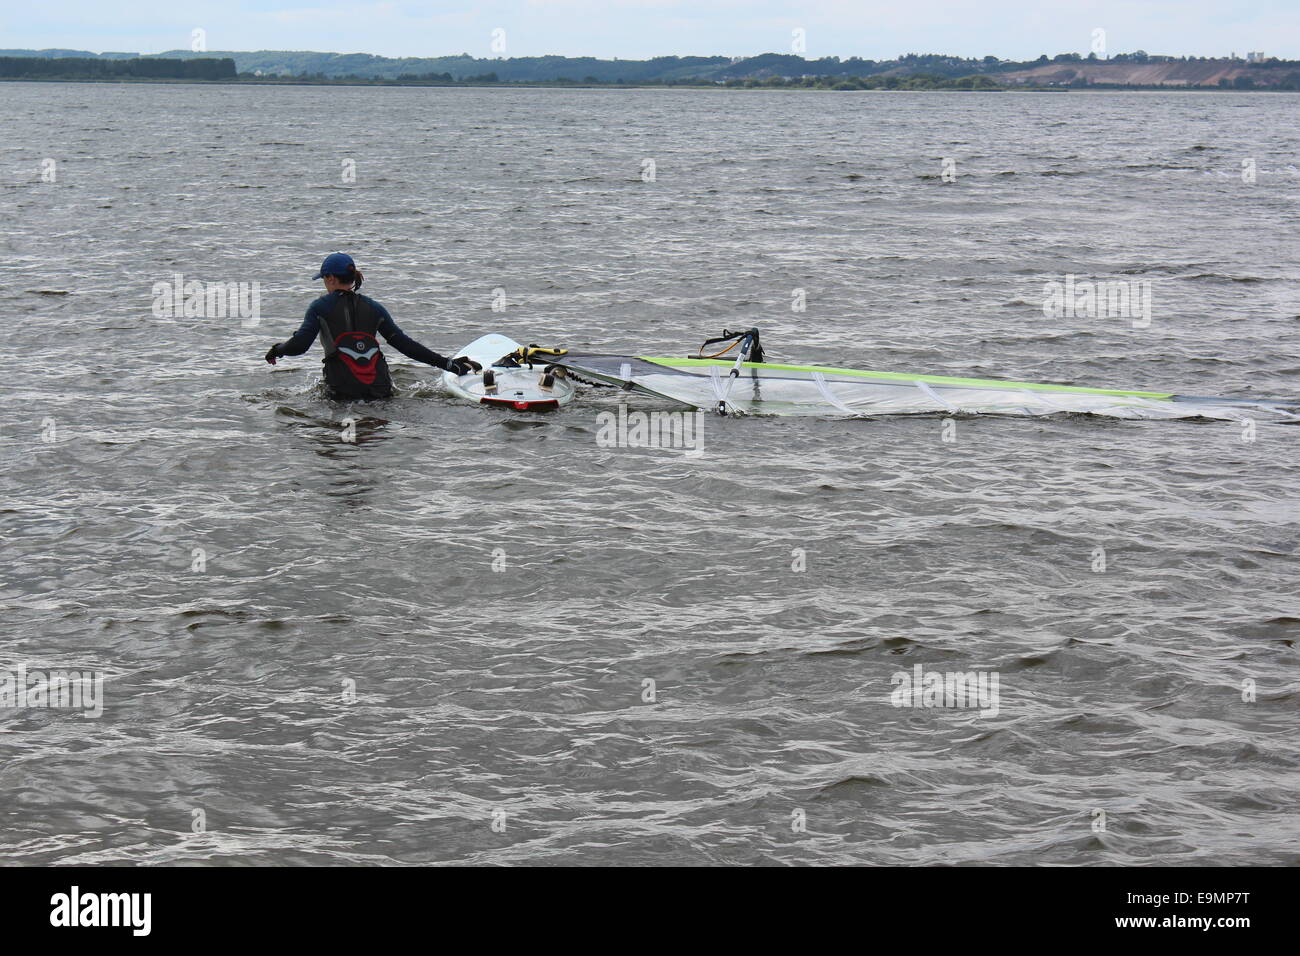 Polen, Rewa 17. August 2014: Anfänger weiblichen Windsurfer lernt Windsurfen. Sie steht im Wasser und zieht ihr Surfbrett. Stockfoto